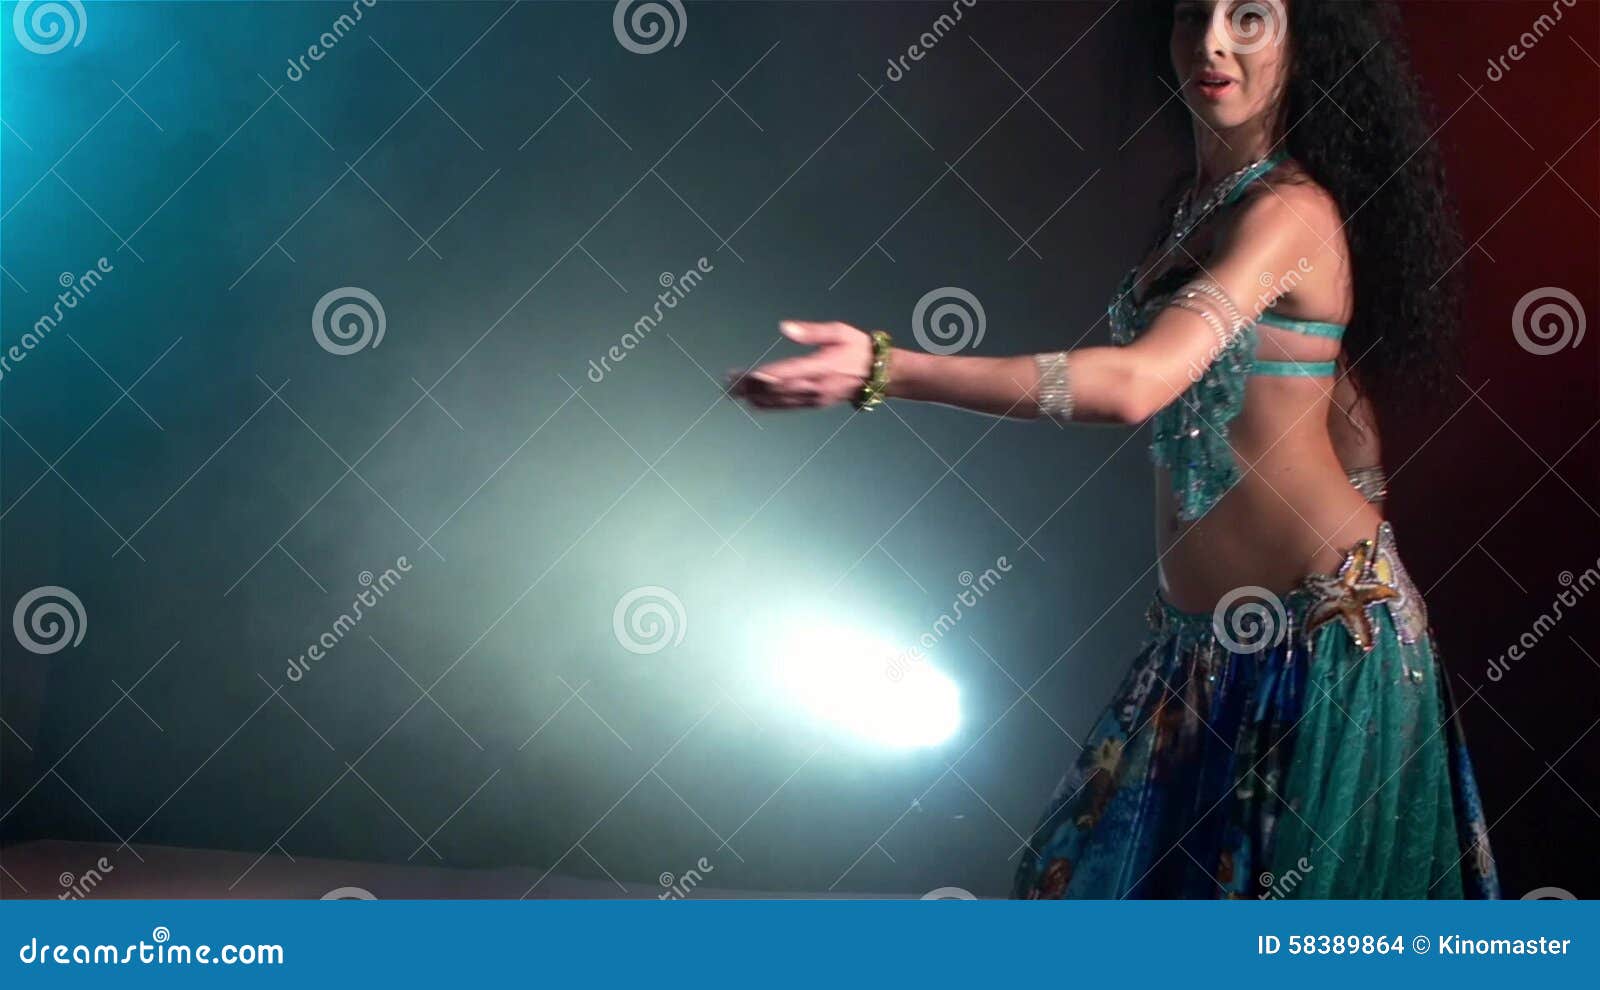 Girl dancing cam Featured Dancing